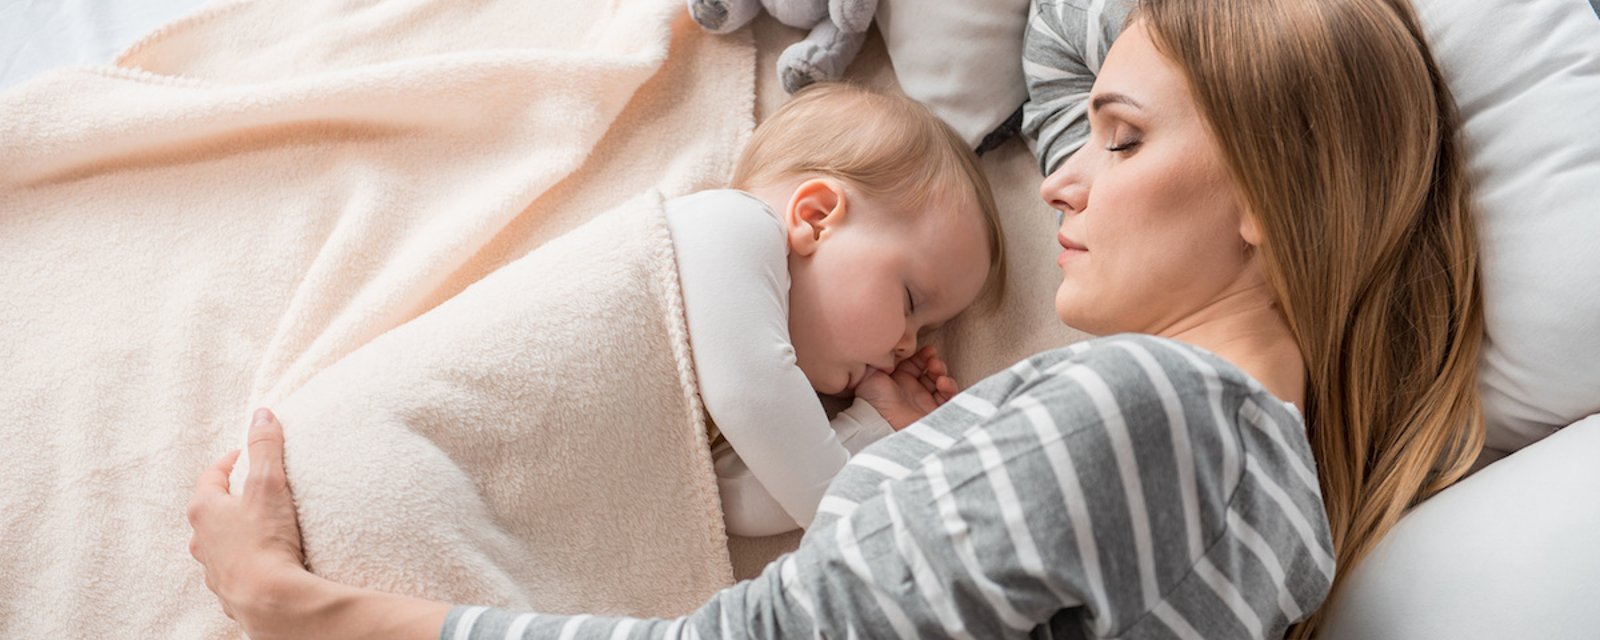 Selon un pédiatre, les enfants devraient dormir avec leur mère jusqu’à l’âge de 3 ans